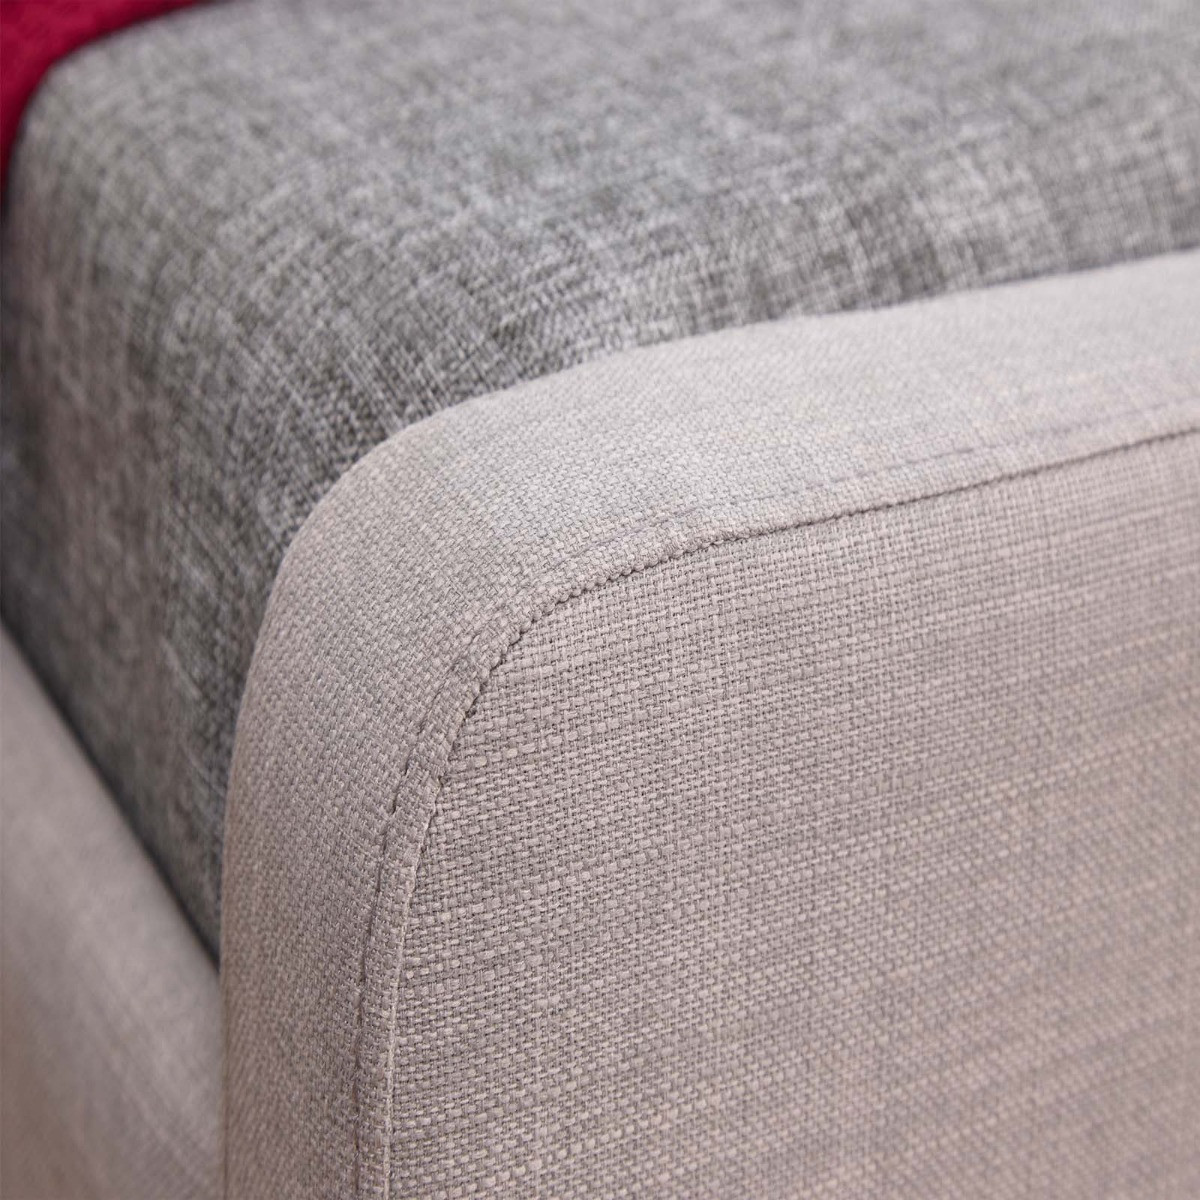 Ashbourne Upholstered Fabric Bed Frame - Light Grey>